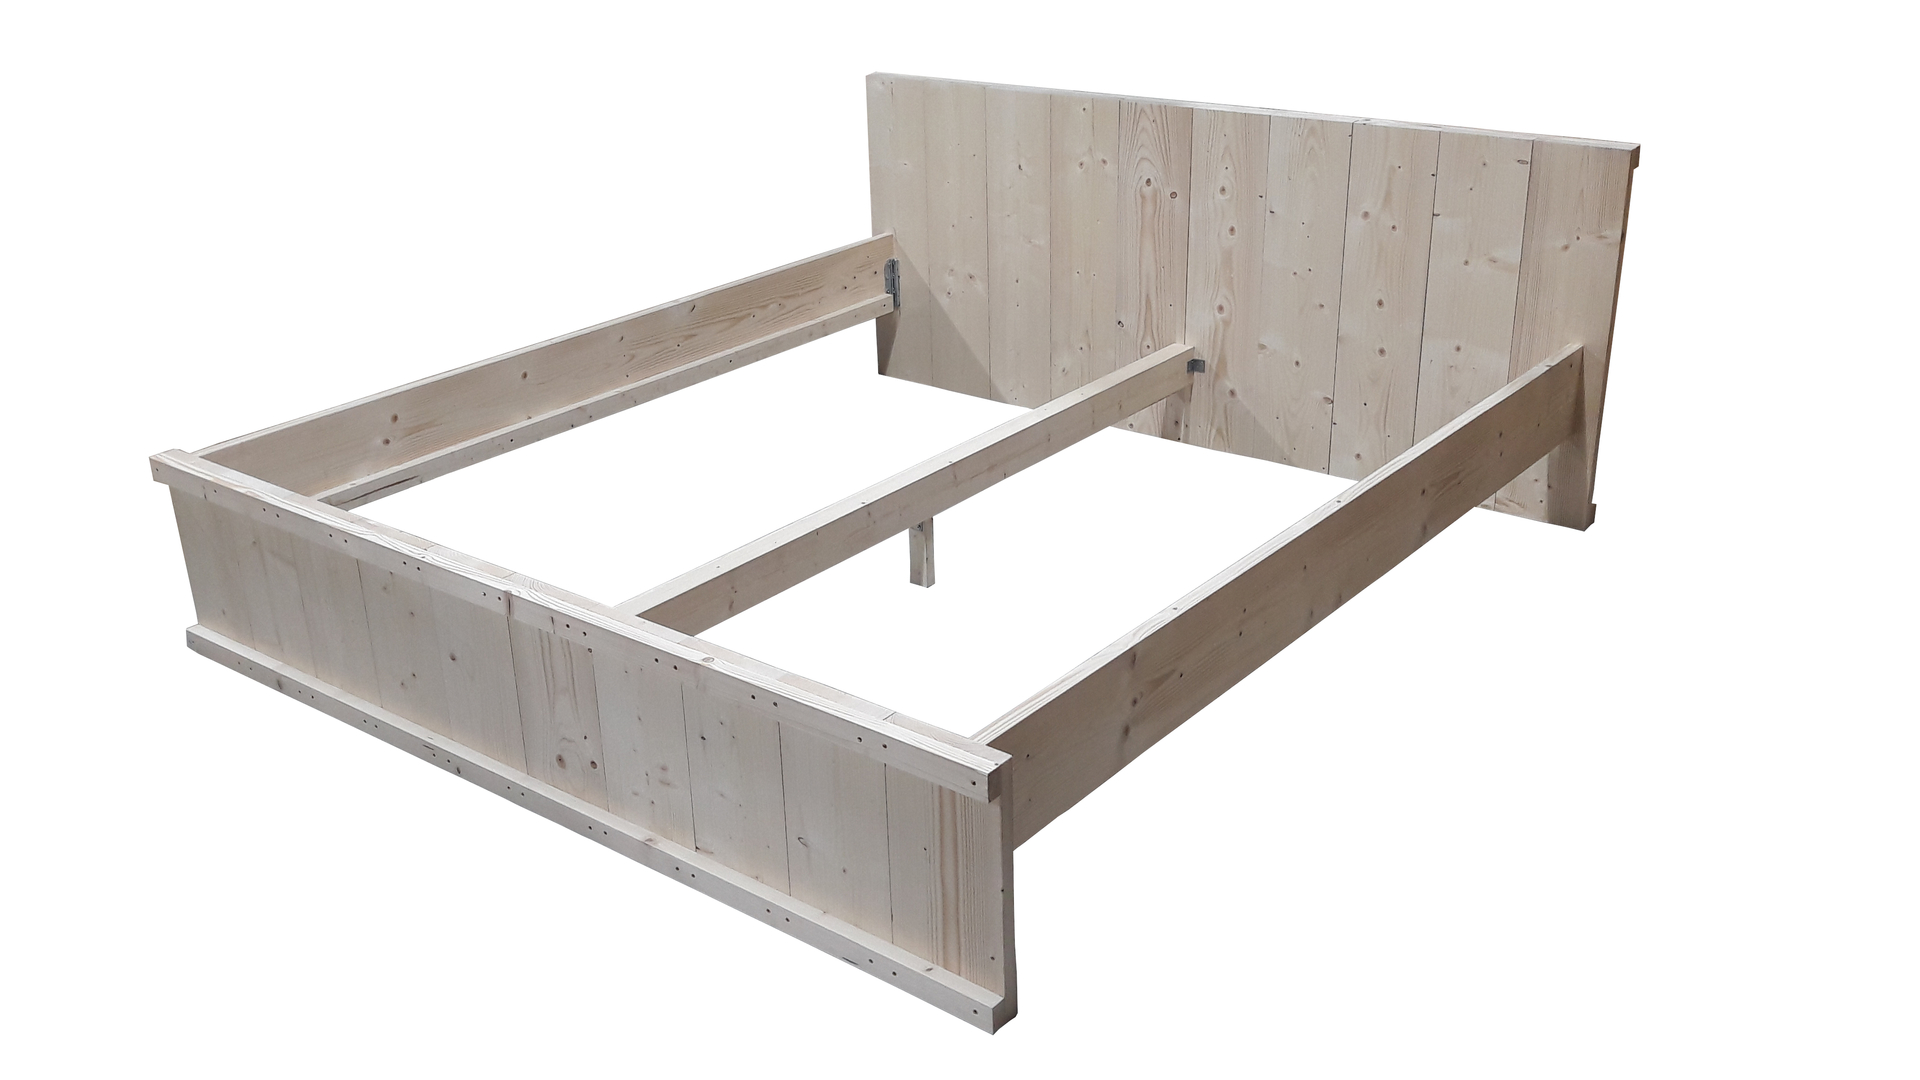 Tweepersoons bed bouwpakket zelf maken - Woodkit